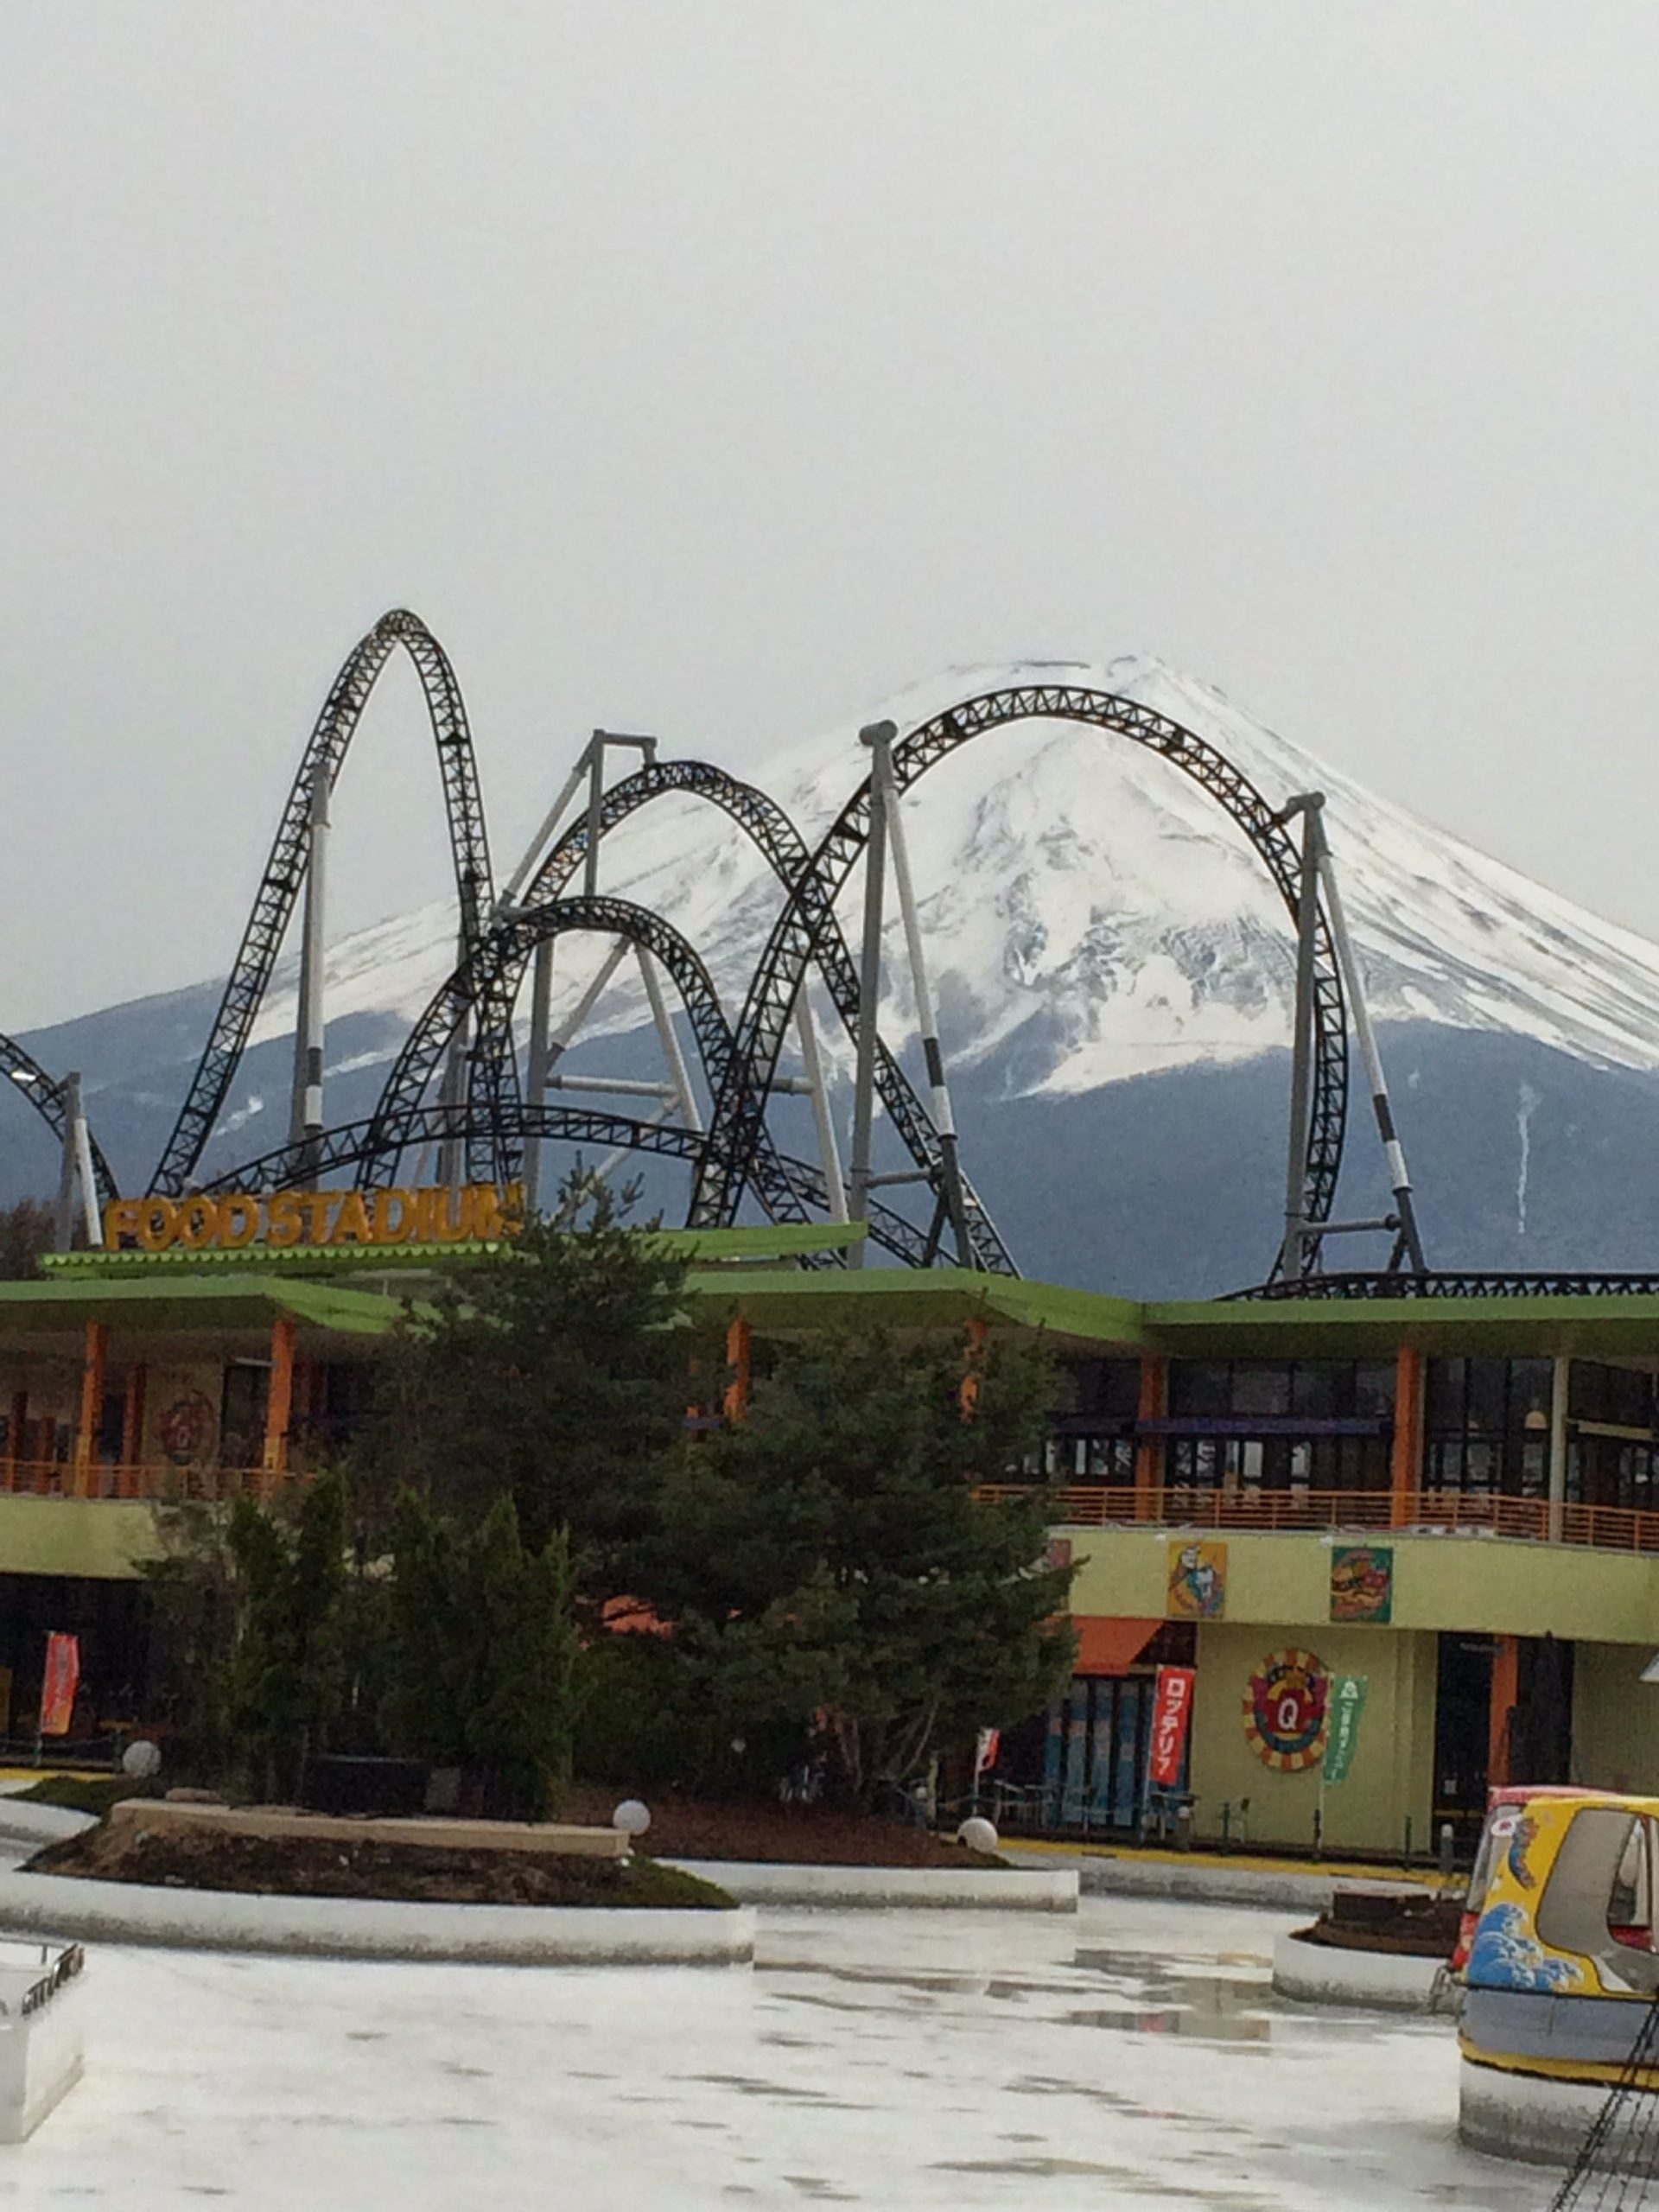 Fuji-Q Highland - Japan's Roller Coaster Heaven | Kromed Out